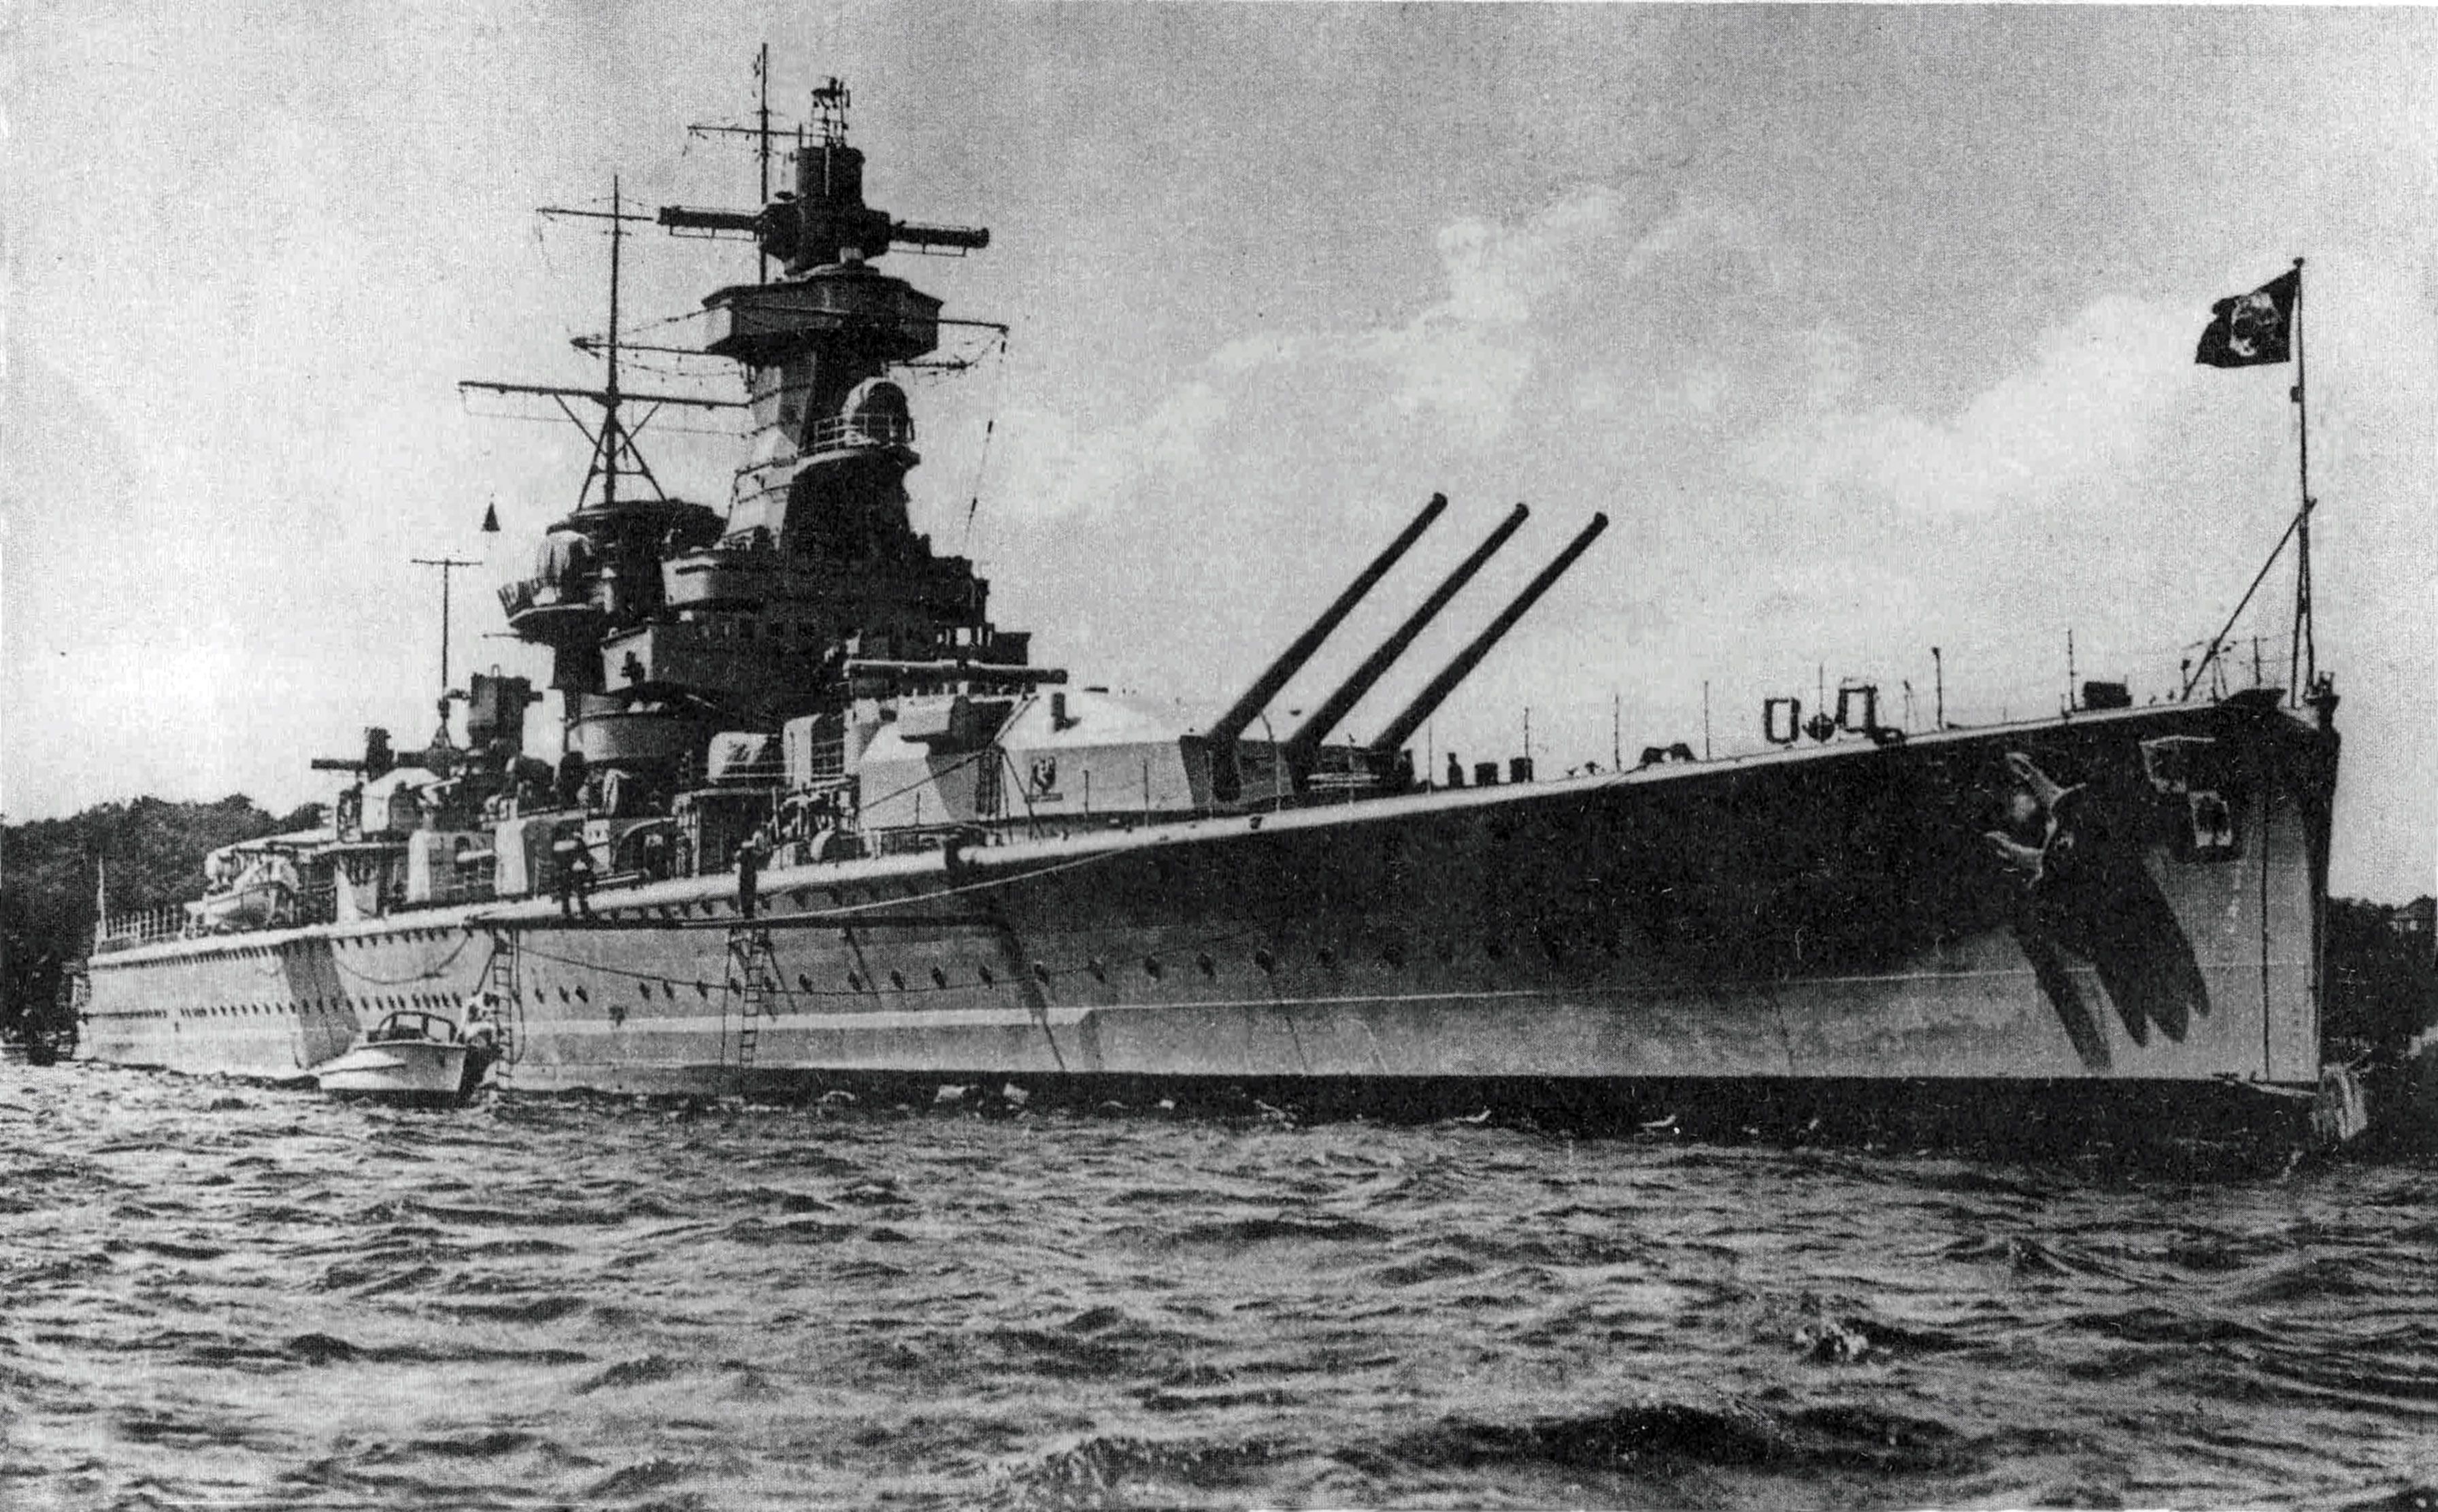 German Admiral Graf Spee cruiser